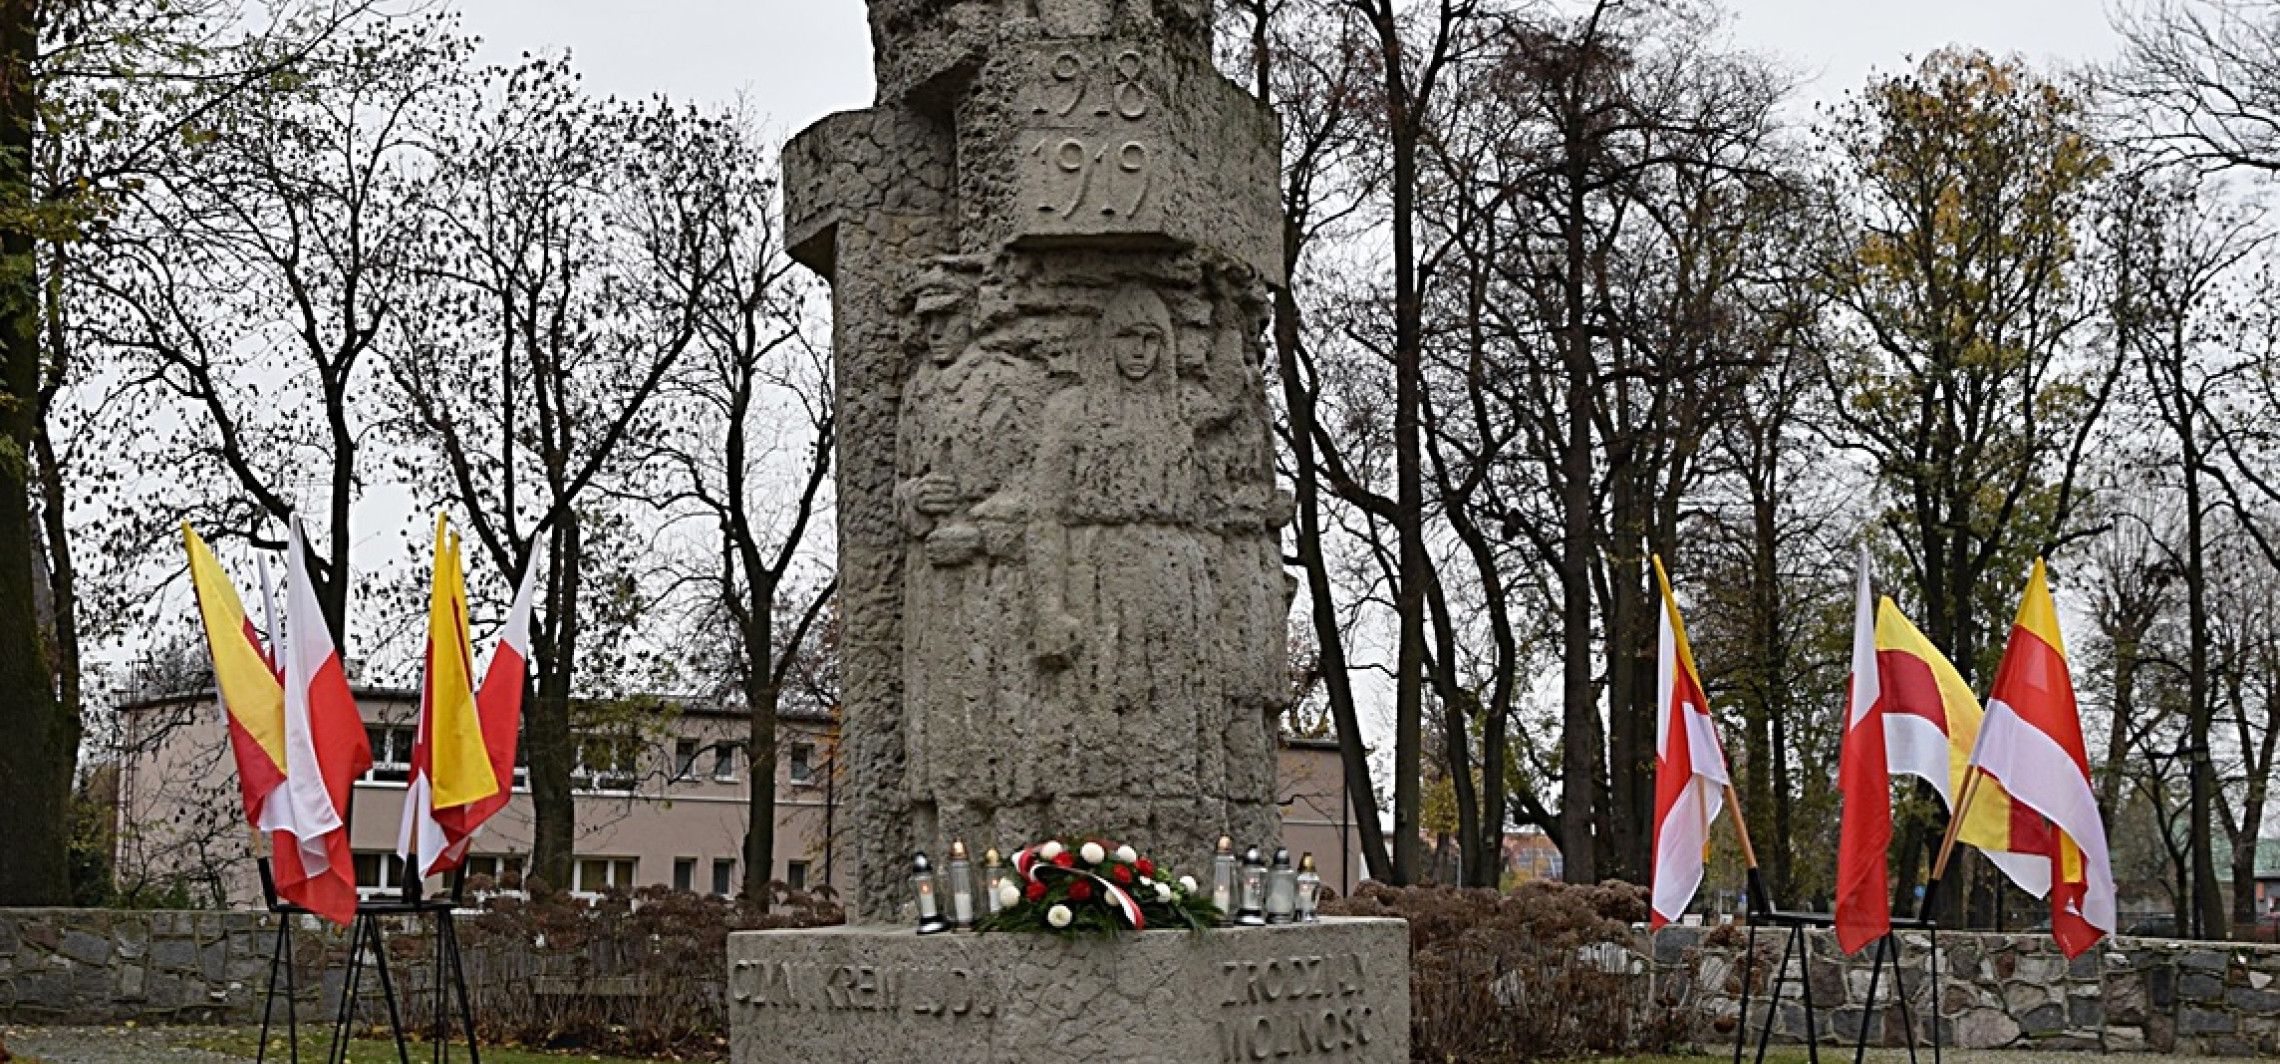 Inowrocław - Tak uczcimy 104. rocznicę wyzwolenia Inowrocławia i Powstania Wielkopolskiego